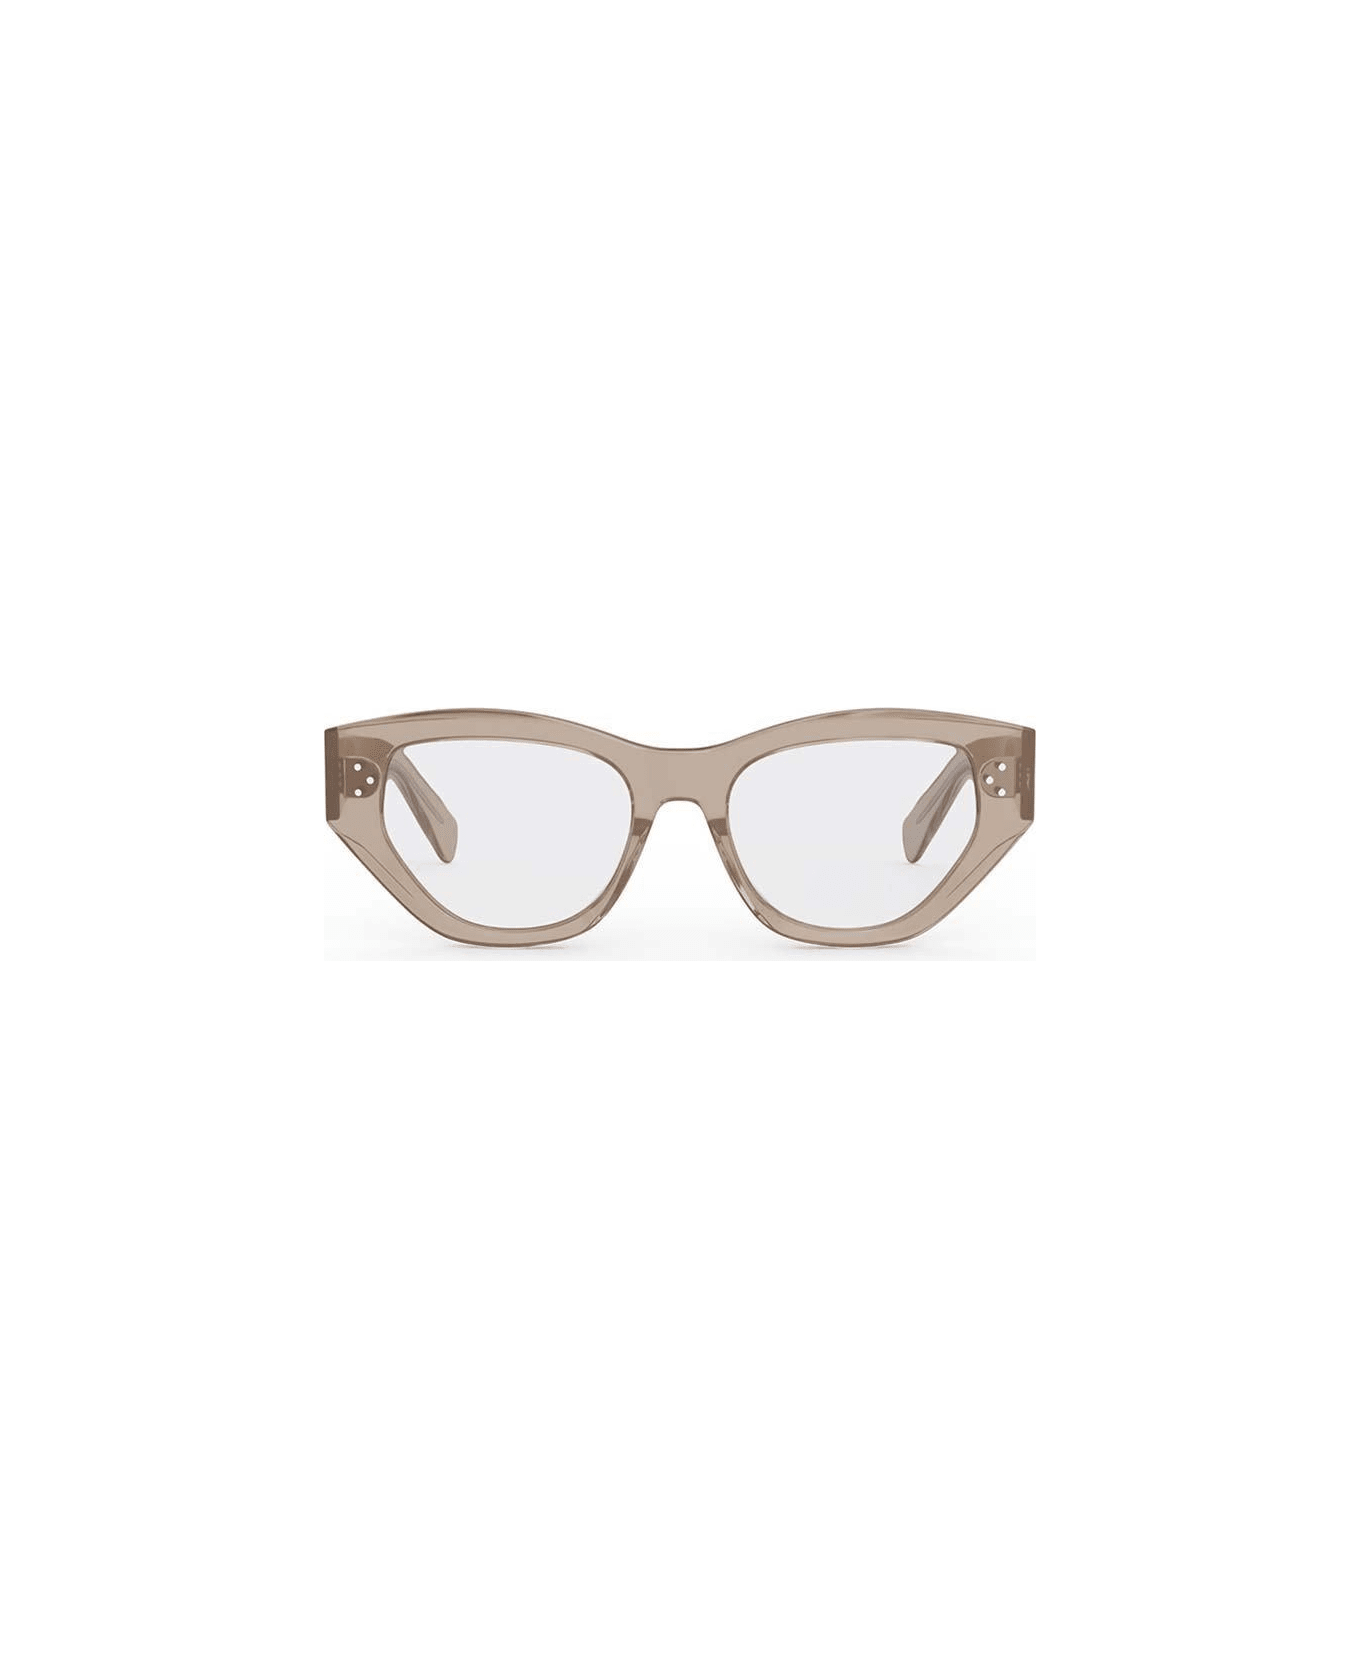 Celine Cat-eye Glasses - 059 アイウェア